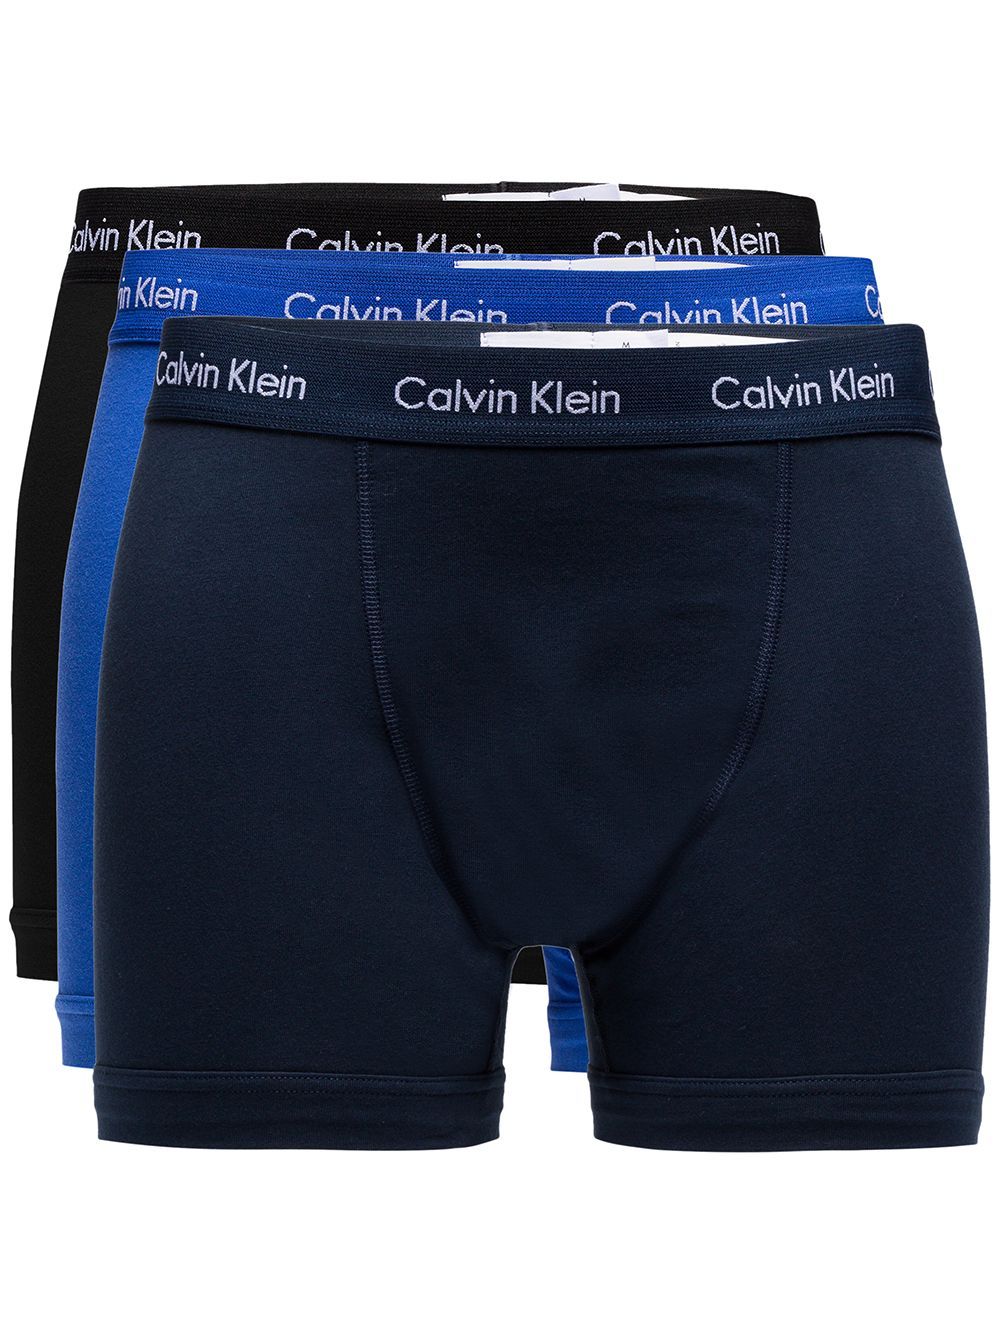 Calvin Klein Underwear | Farfetch Global